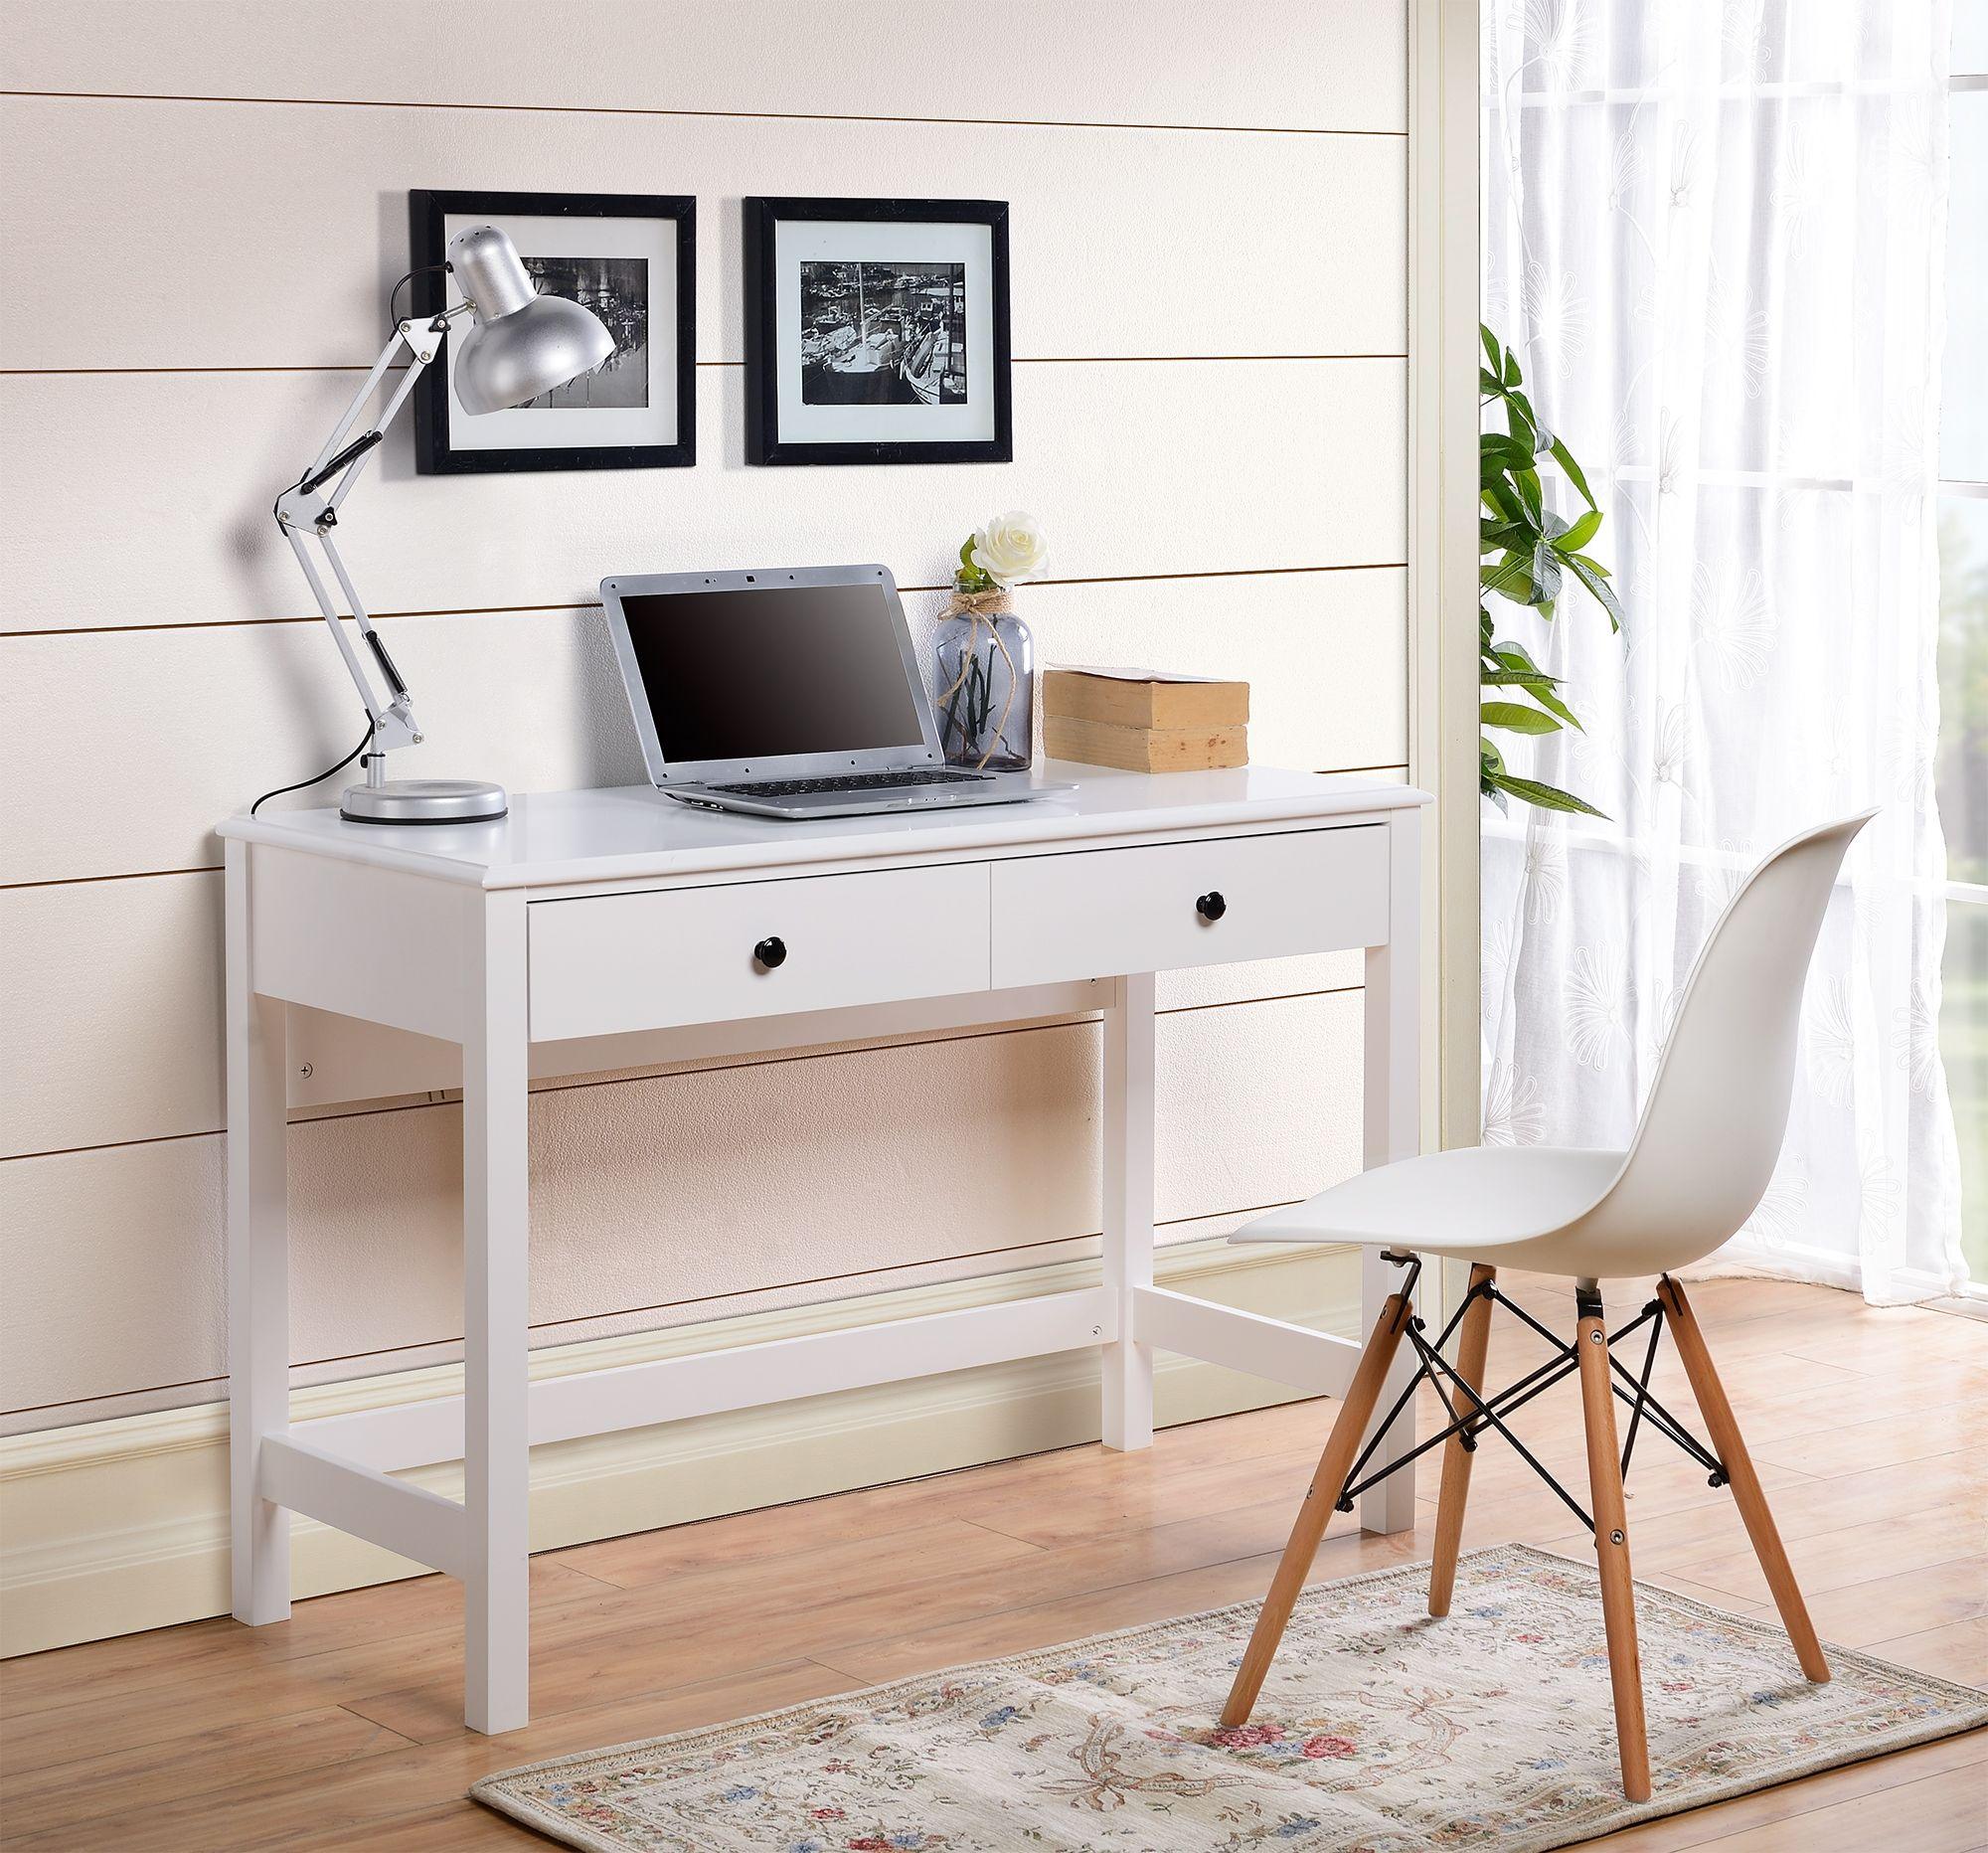 Ashley Furniture - Othello - White - Home Office Small Desk - 5th Avenue Furniture